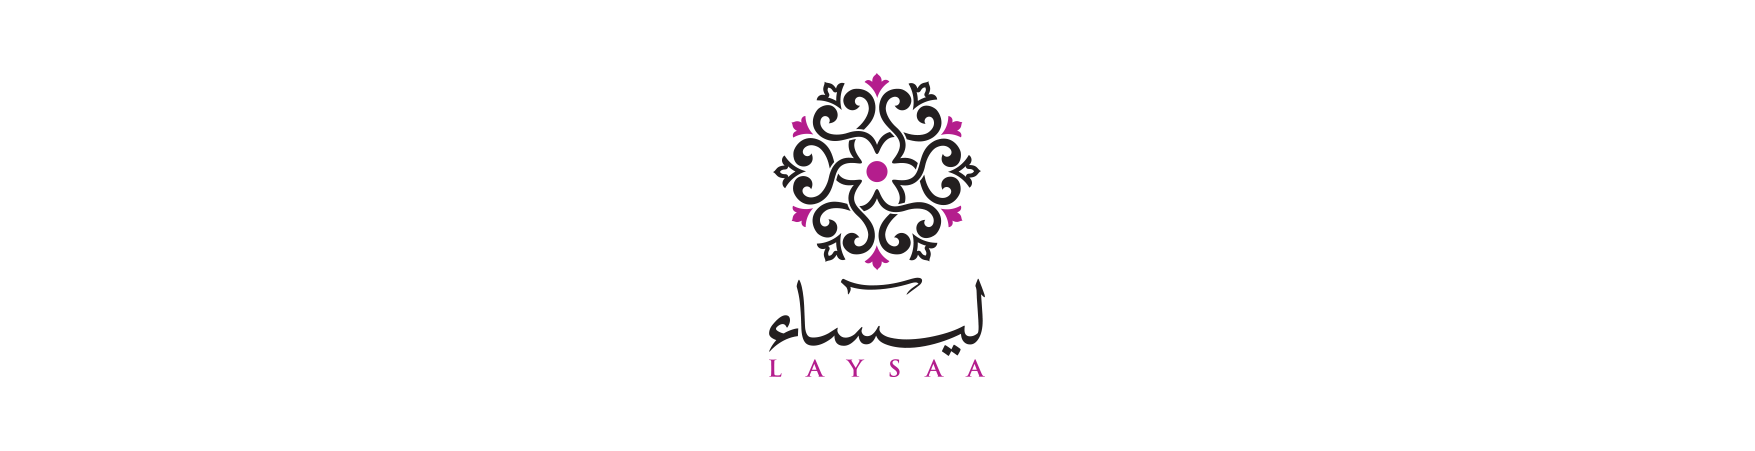 Laysaa 